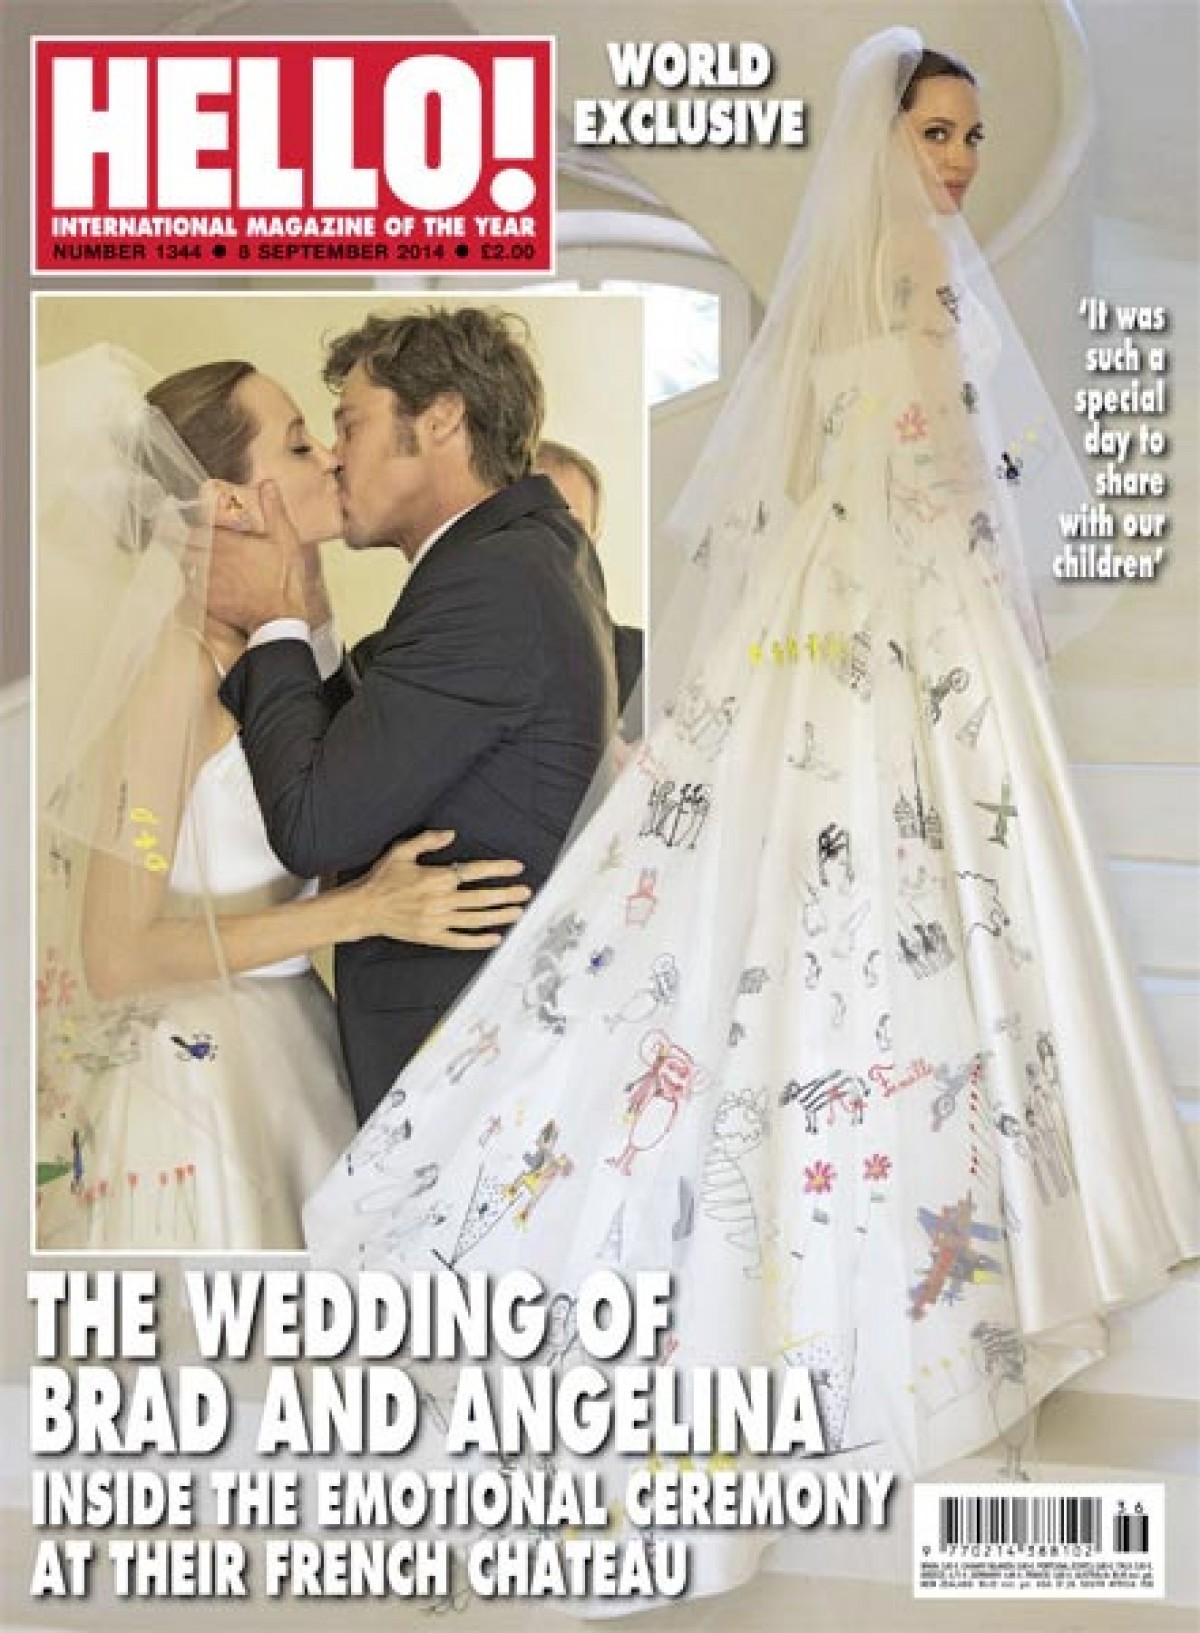 ブラッド・ピット＆アンジェリーナ・ジョリー夫妻、愛に満ちた結婚式の写真が公開